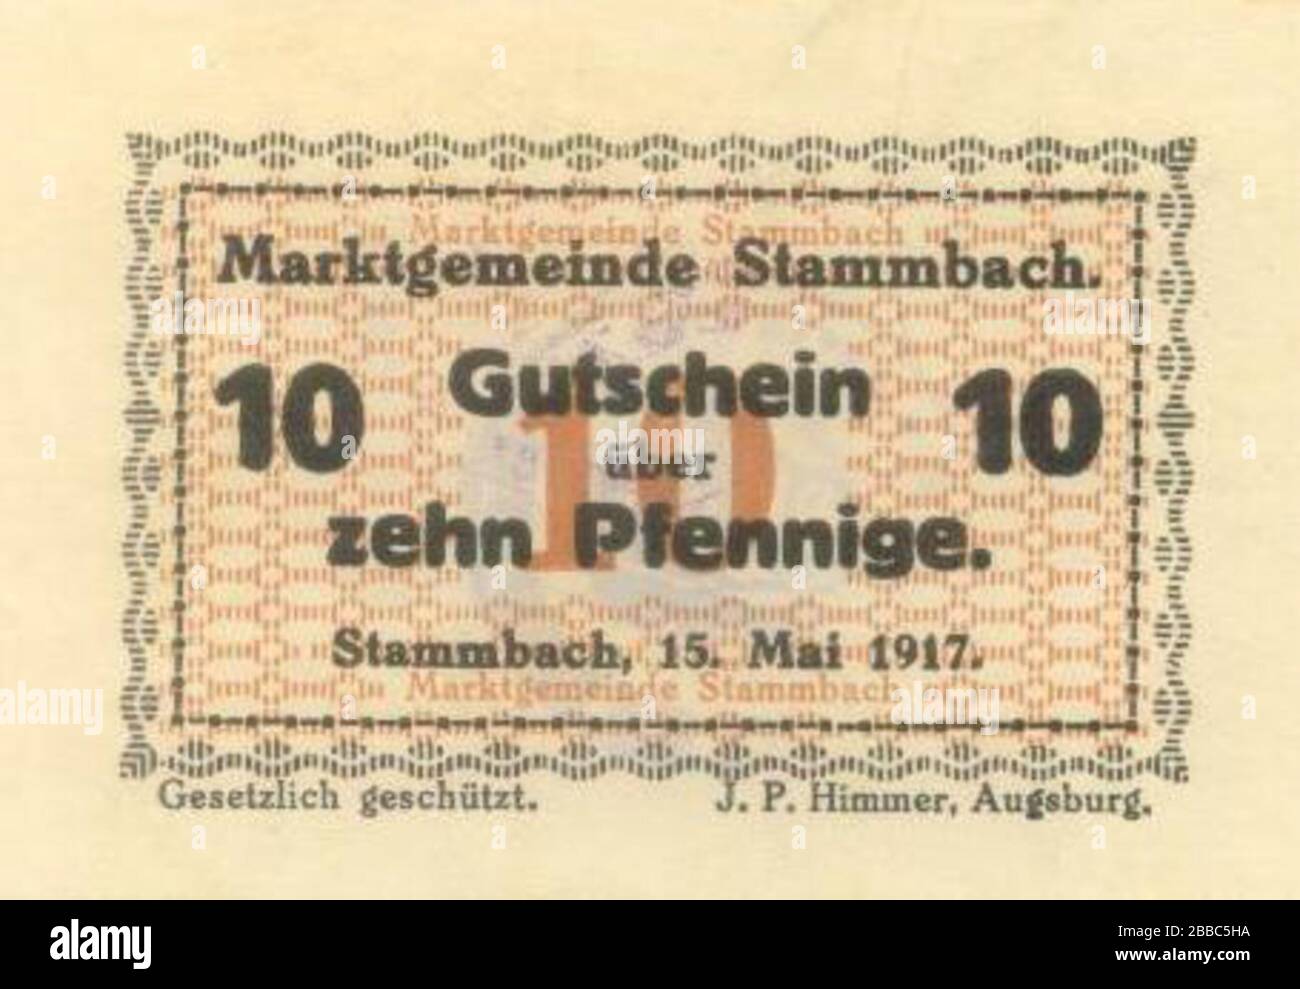 GERMANY 50 PFENNIGE HIMMER AUGSBURG NOTGELD BANKNOTES GUTSCHEIN 1917 